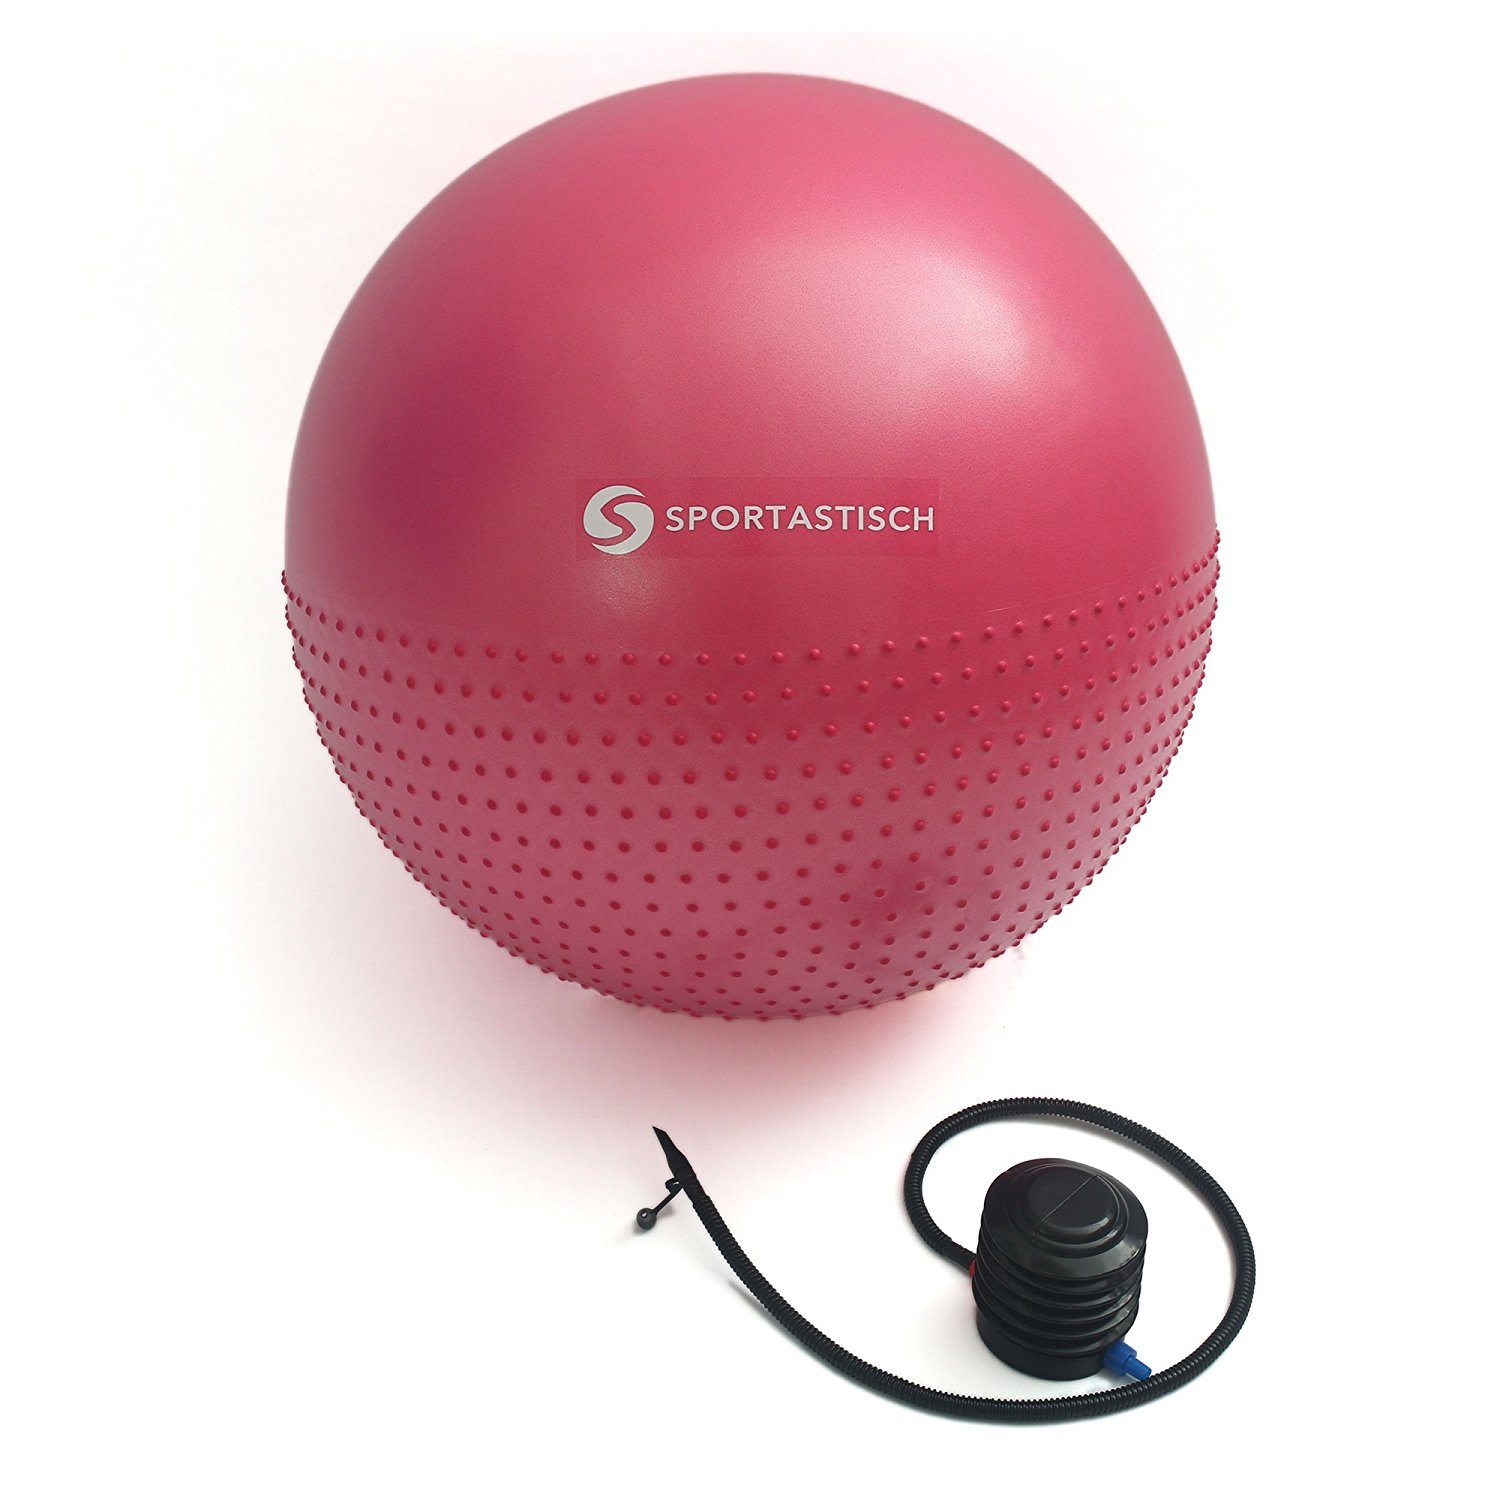 Das Premium Gymnastikball "Massage Gym Ball" von Sportastisch.